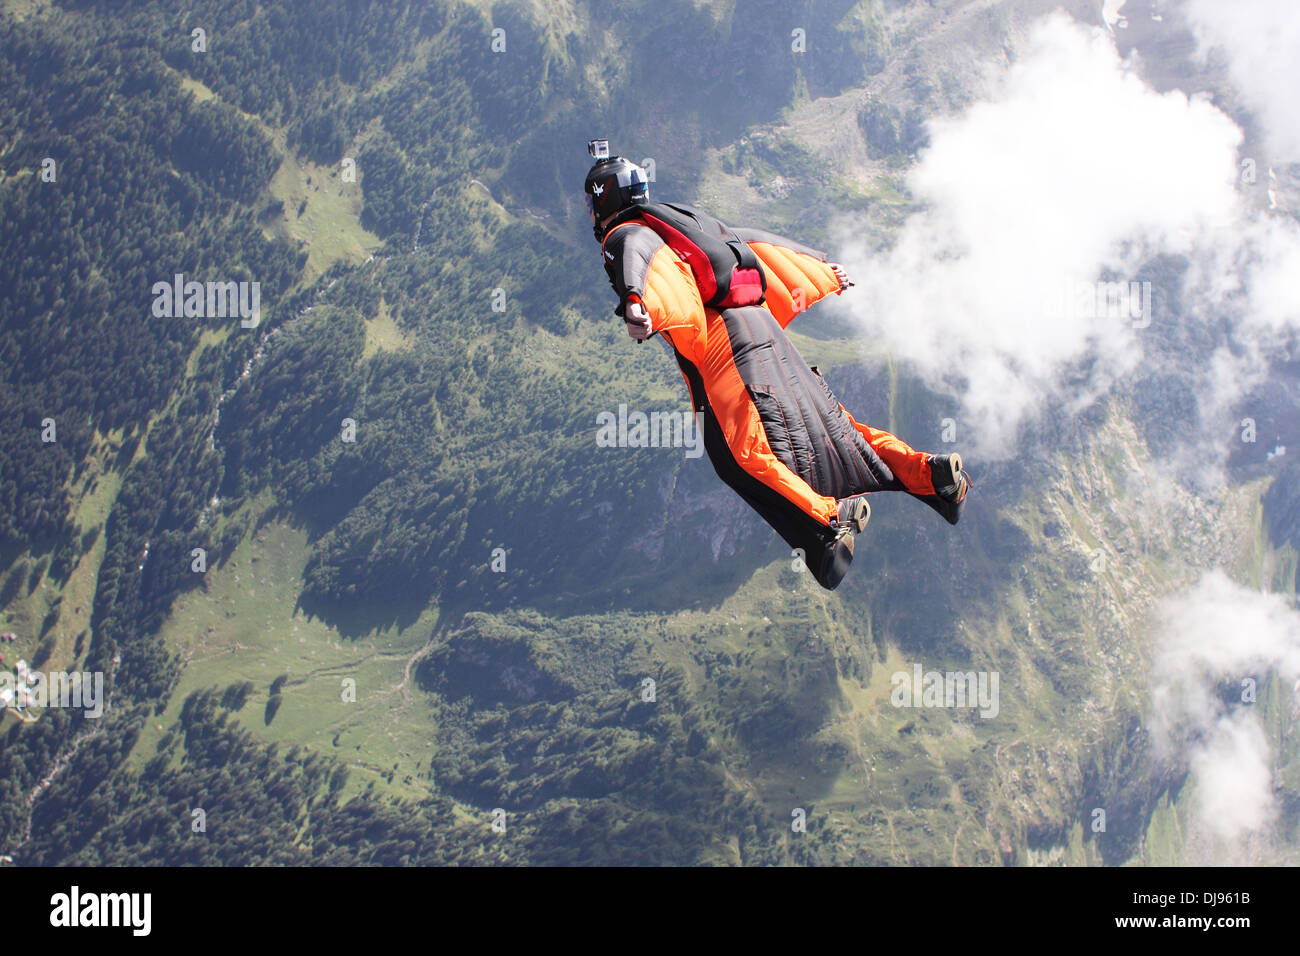 Mann im Overall mit orange Wings fliegt über Berge neben Wolken. Er ist sehr glücklich, in den Himmel steigen. Stockfoto